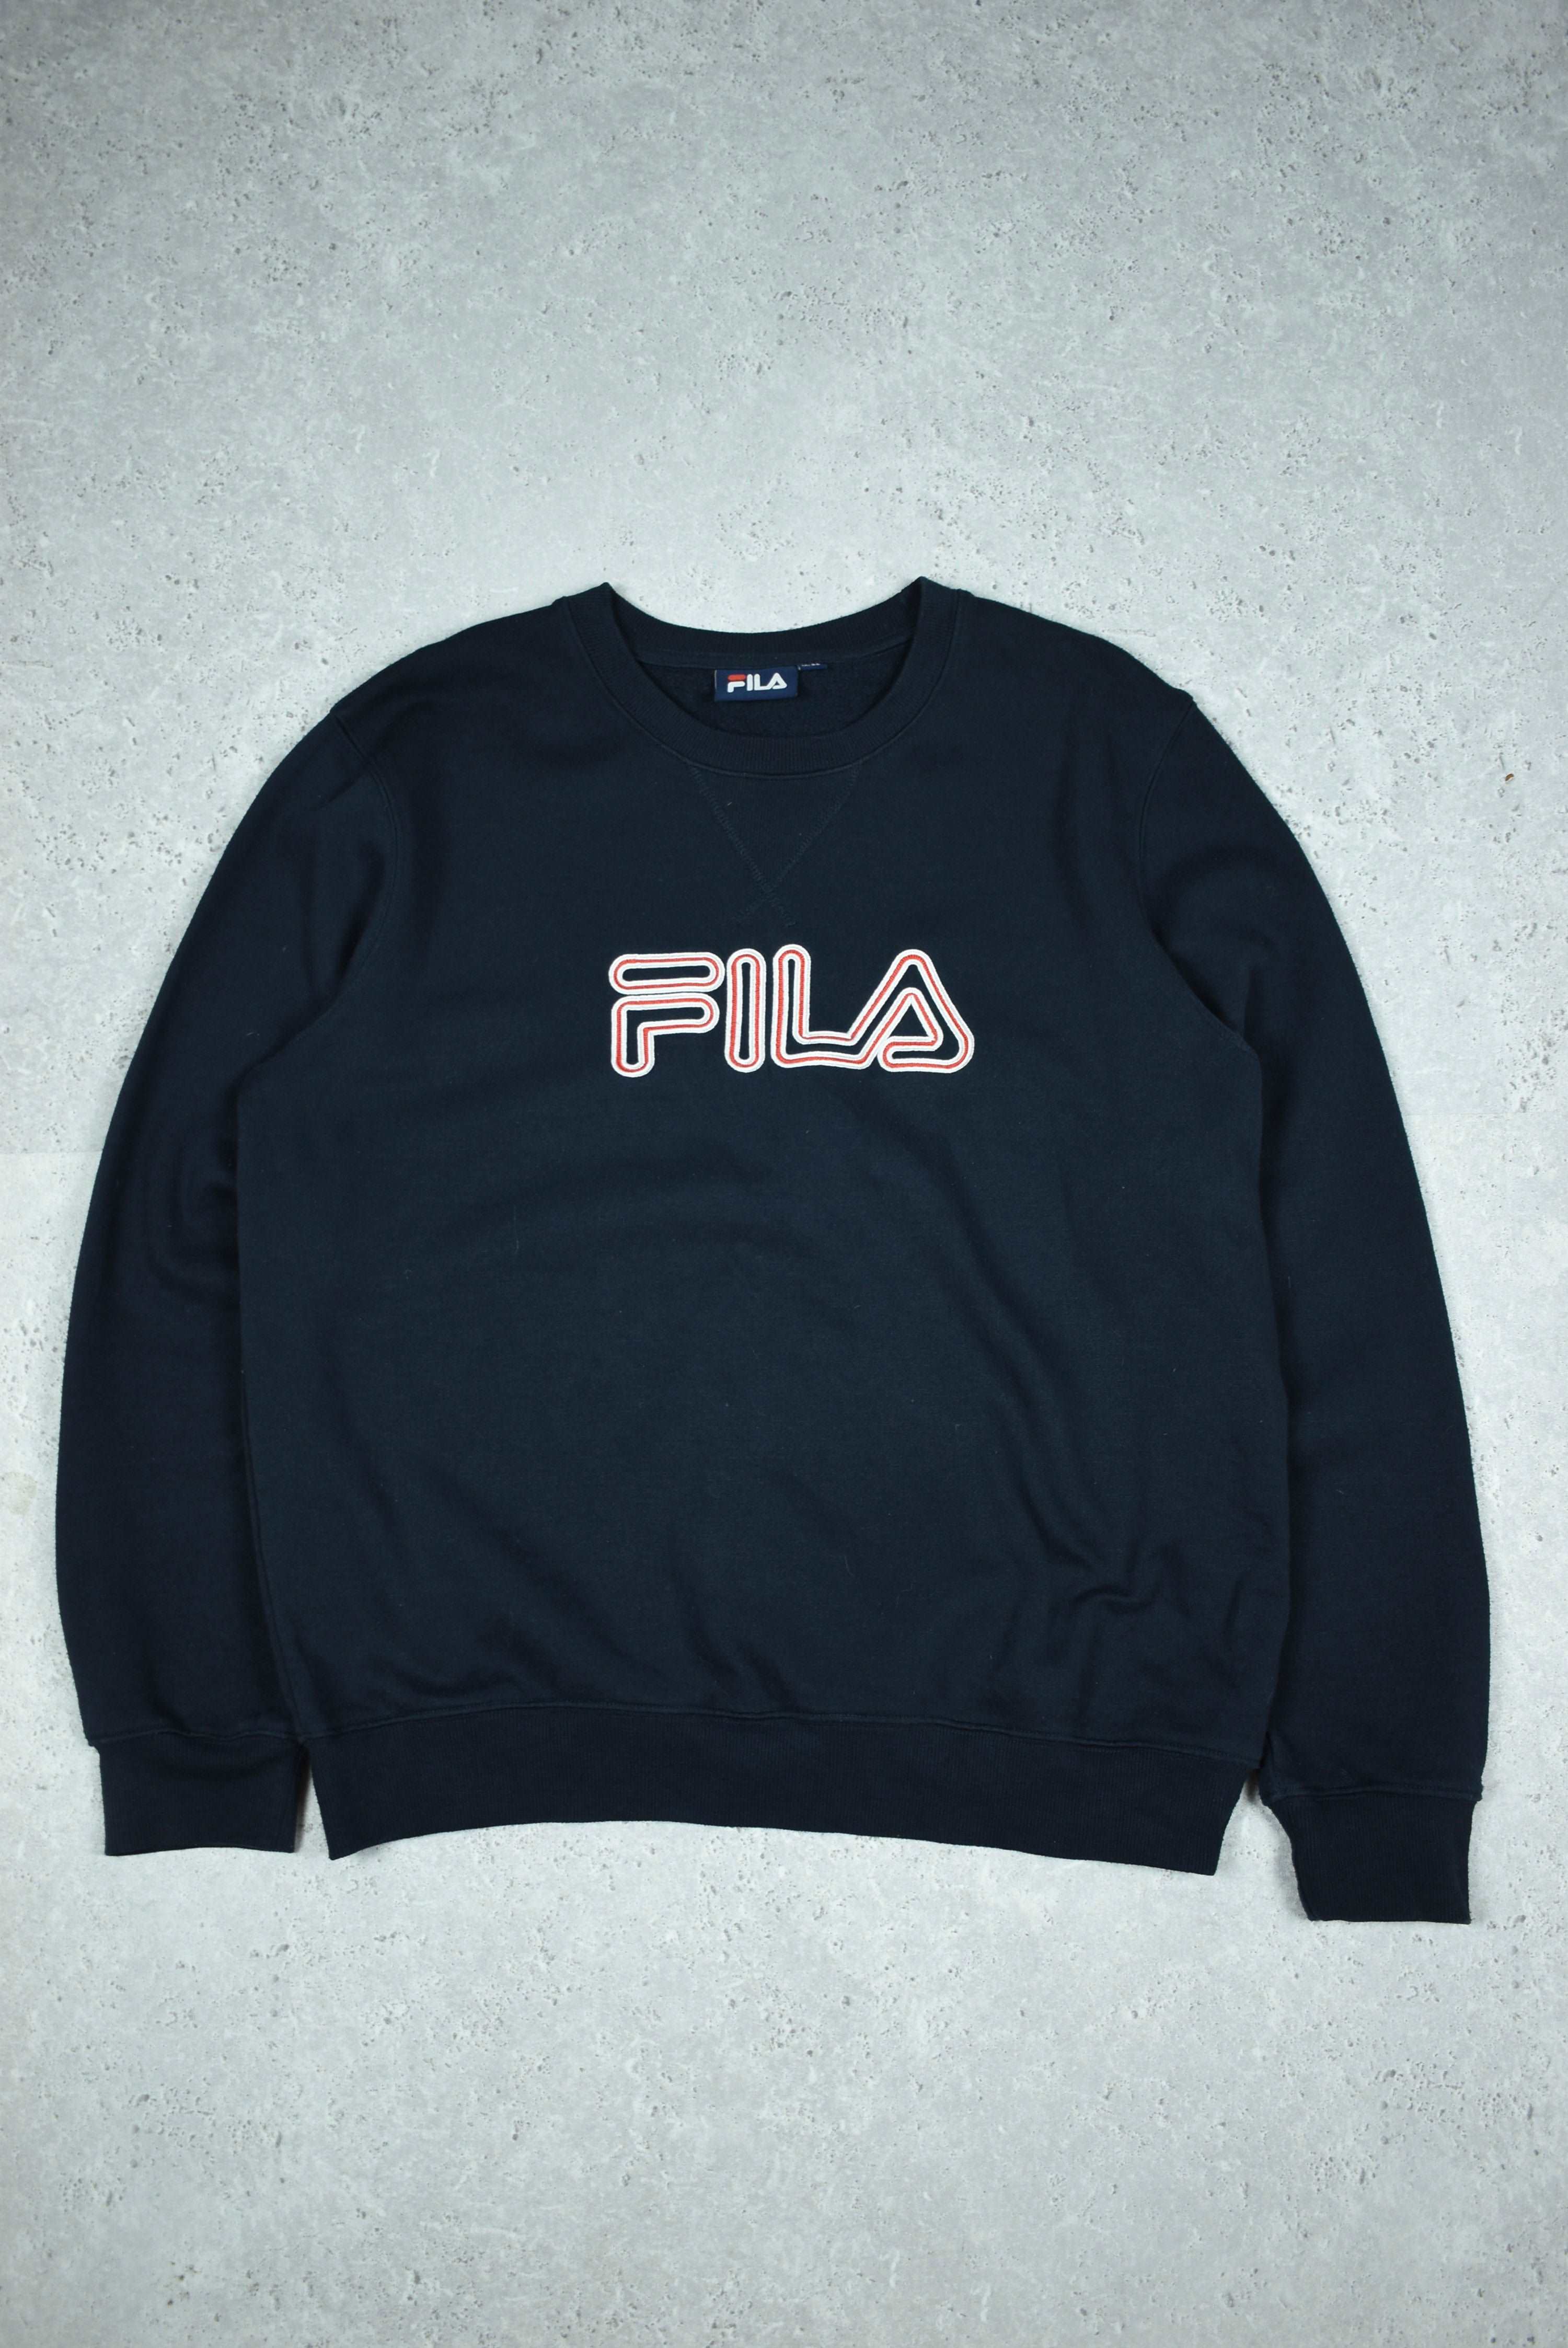 Vintage Fila Embroidered Logo Sweatshirt Large